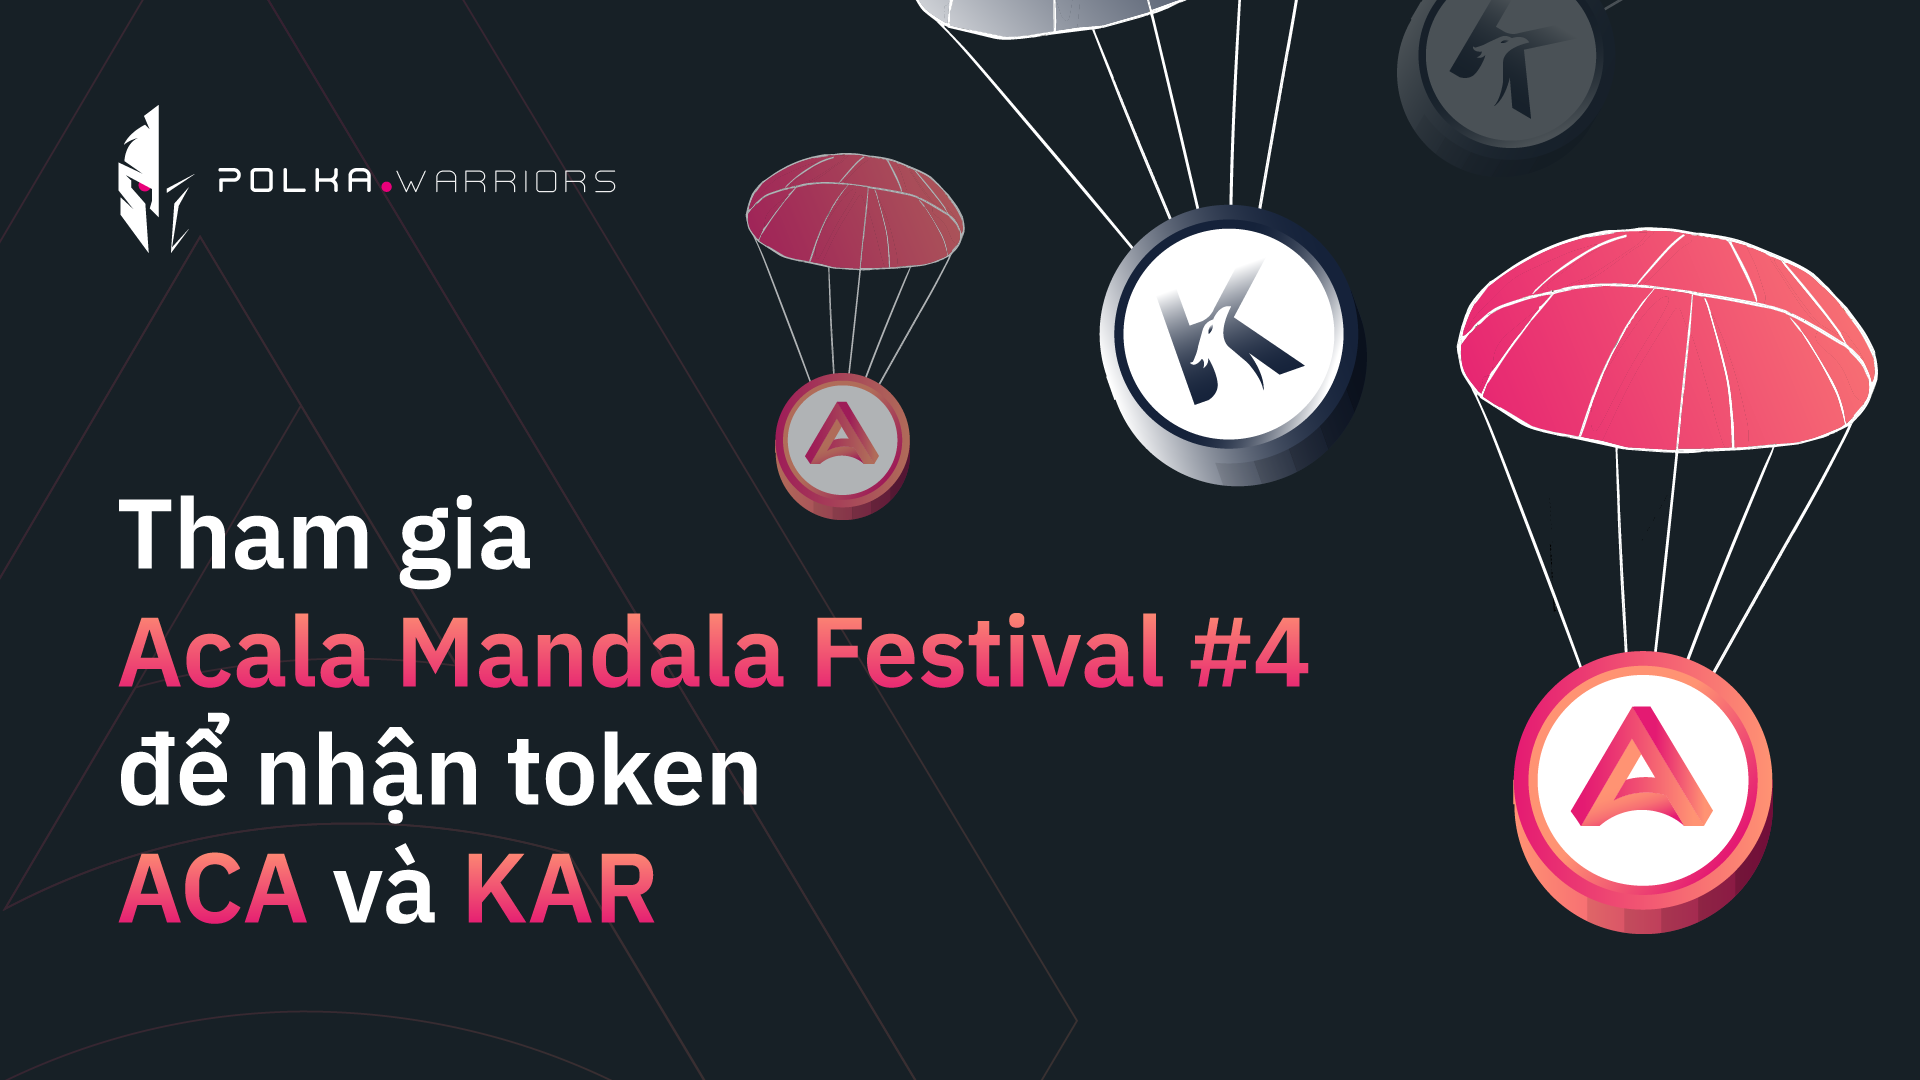 Hướng dẫn tham gia sự kiện Mandala Festival để nhận token ACA và KAR - Syndicator